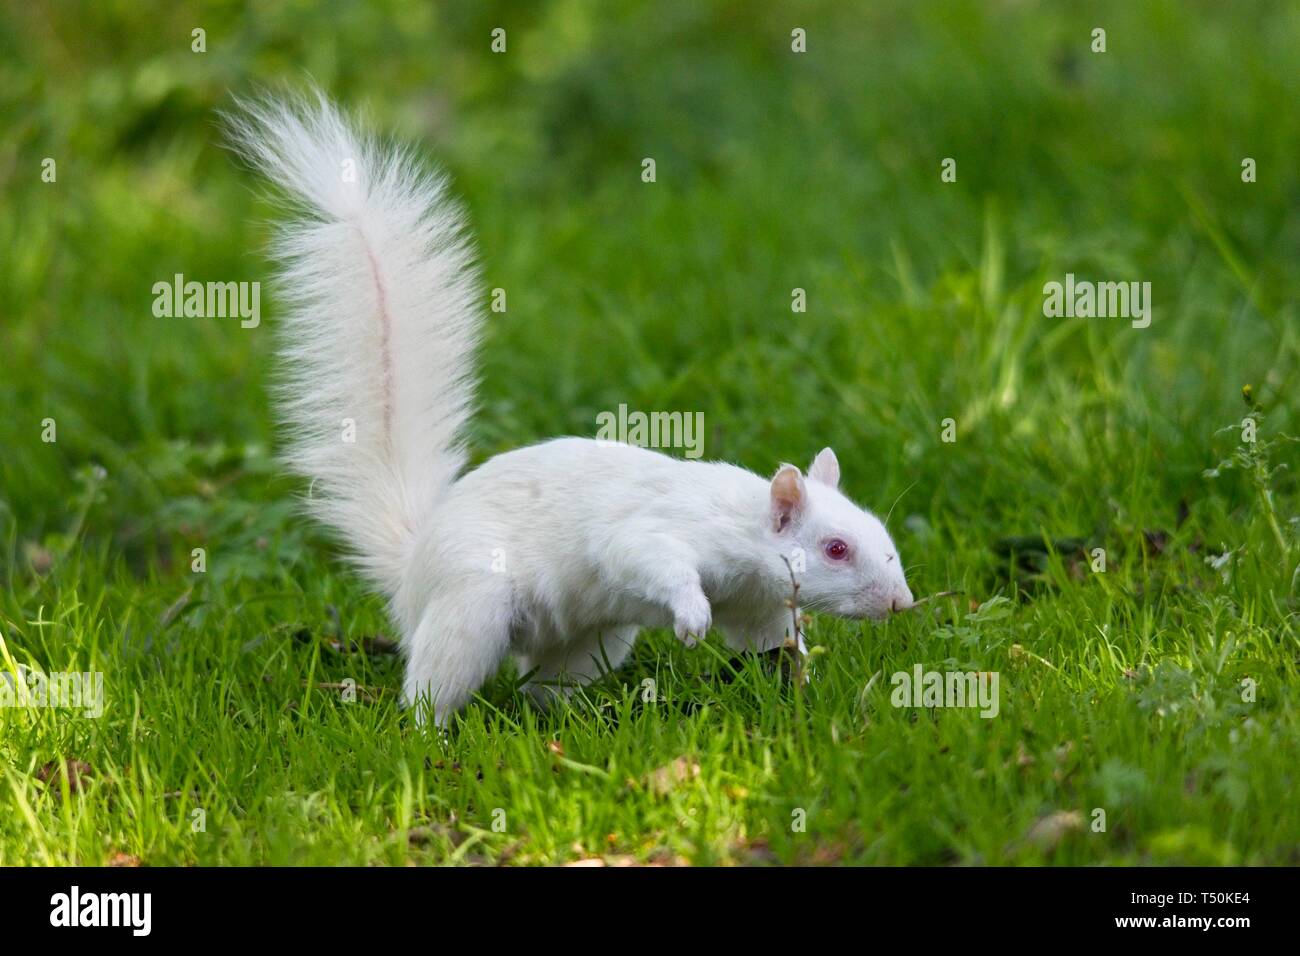 Dieses seltene Albino Grey Eichhörnchen wurde heute Morgen in einem Park in Eastbourne gesichtet und genoss scheinbar das gute Wetter, während er an Ästen knabberte. Echte Albinos haben keine Pigmentierung, was zu rosa Augen und weißem Fell führt und haben oft eine kürzere Lebensdauer als normale Eichhörnchen. Stockfoto